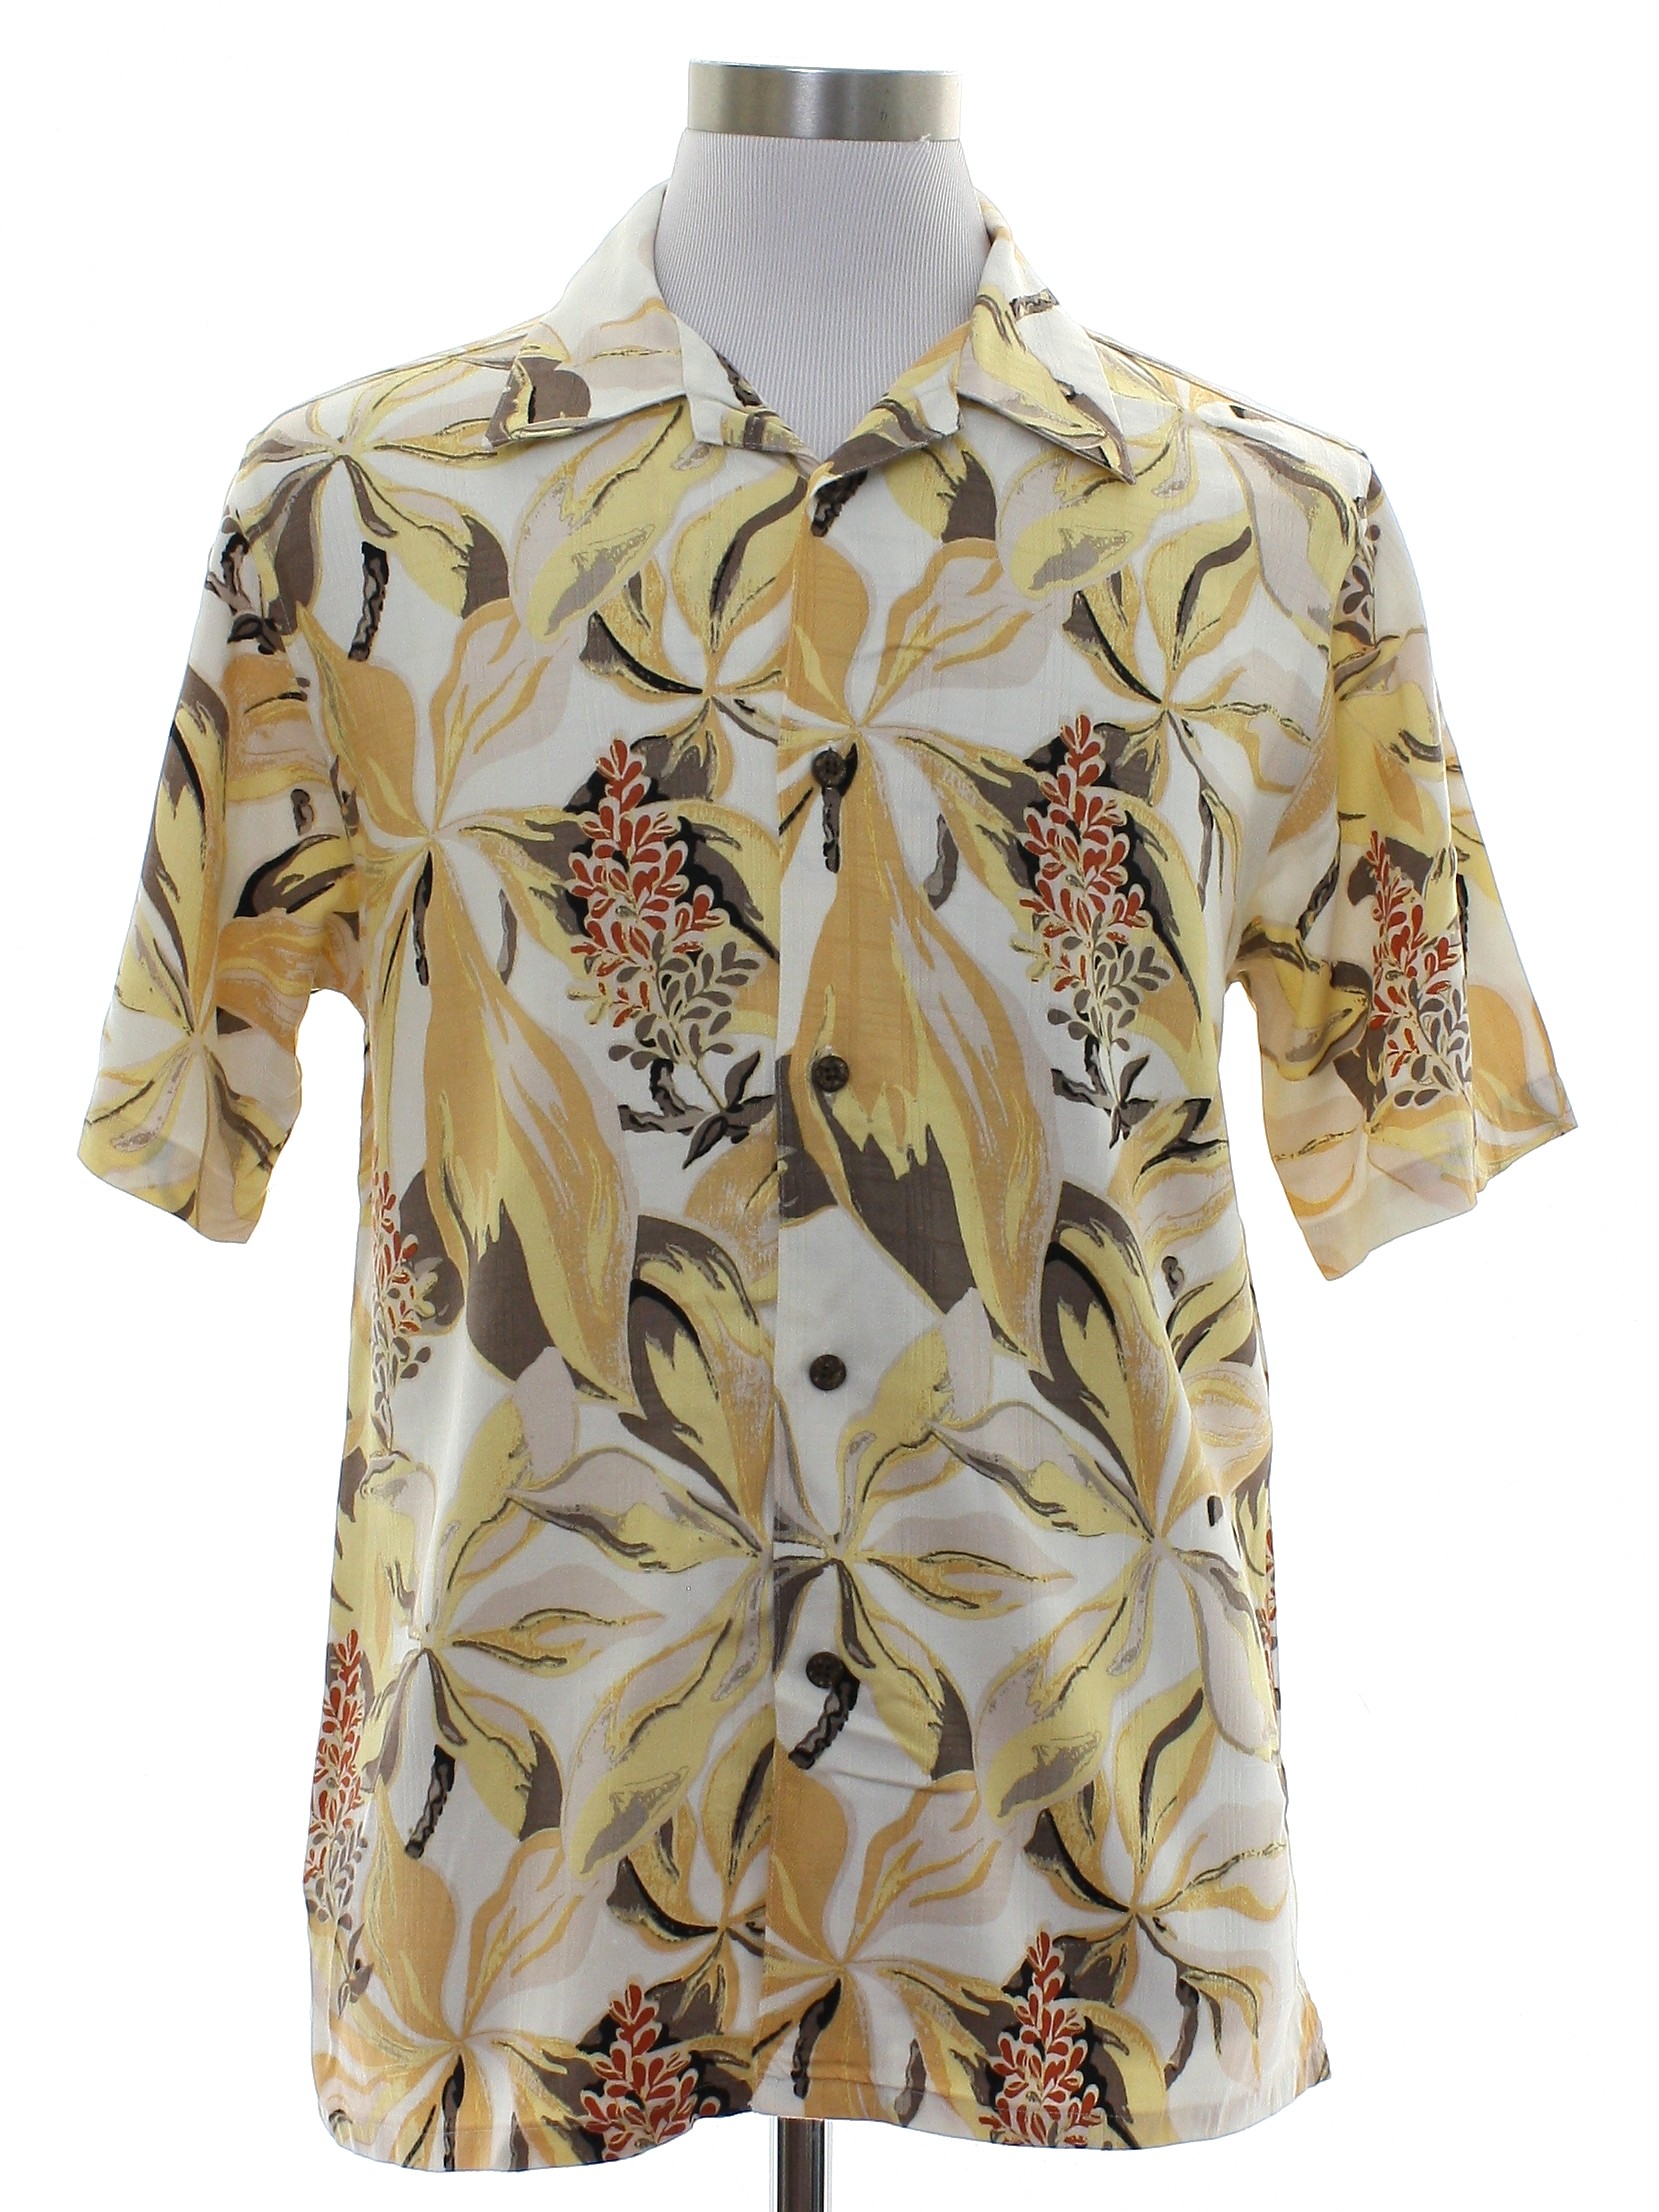 90s Retro Hawaiian Shirt: 90s -The Havanera Shirt Co.- Mens ivory ...